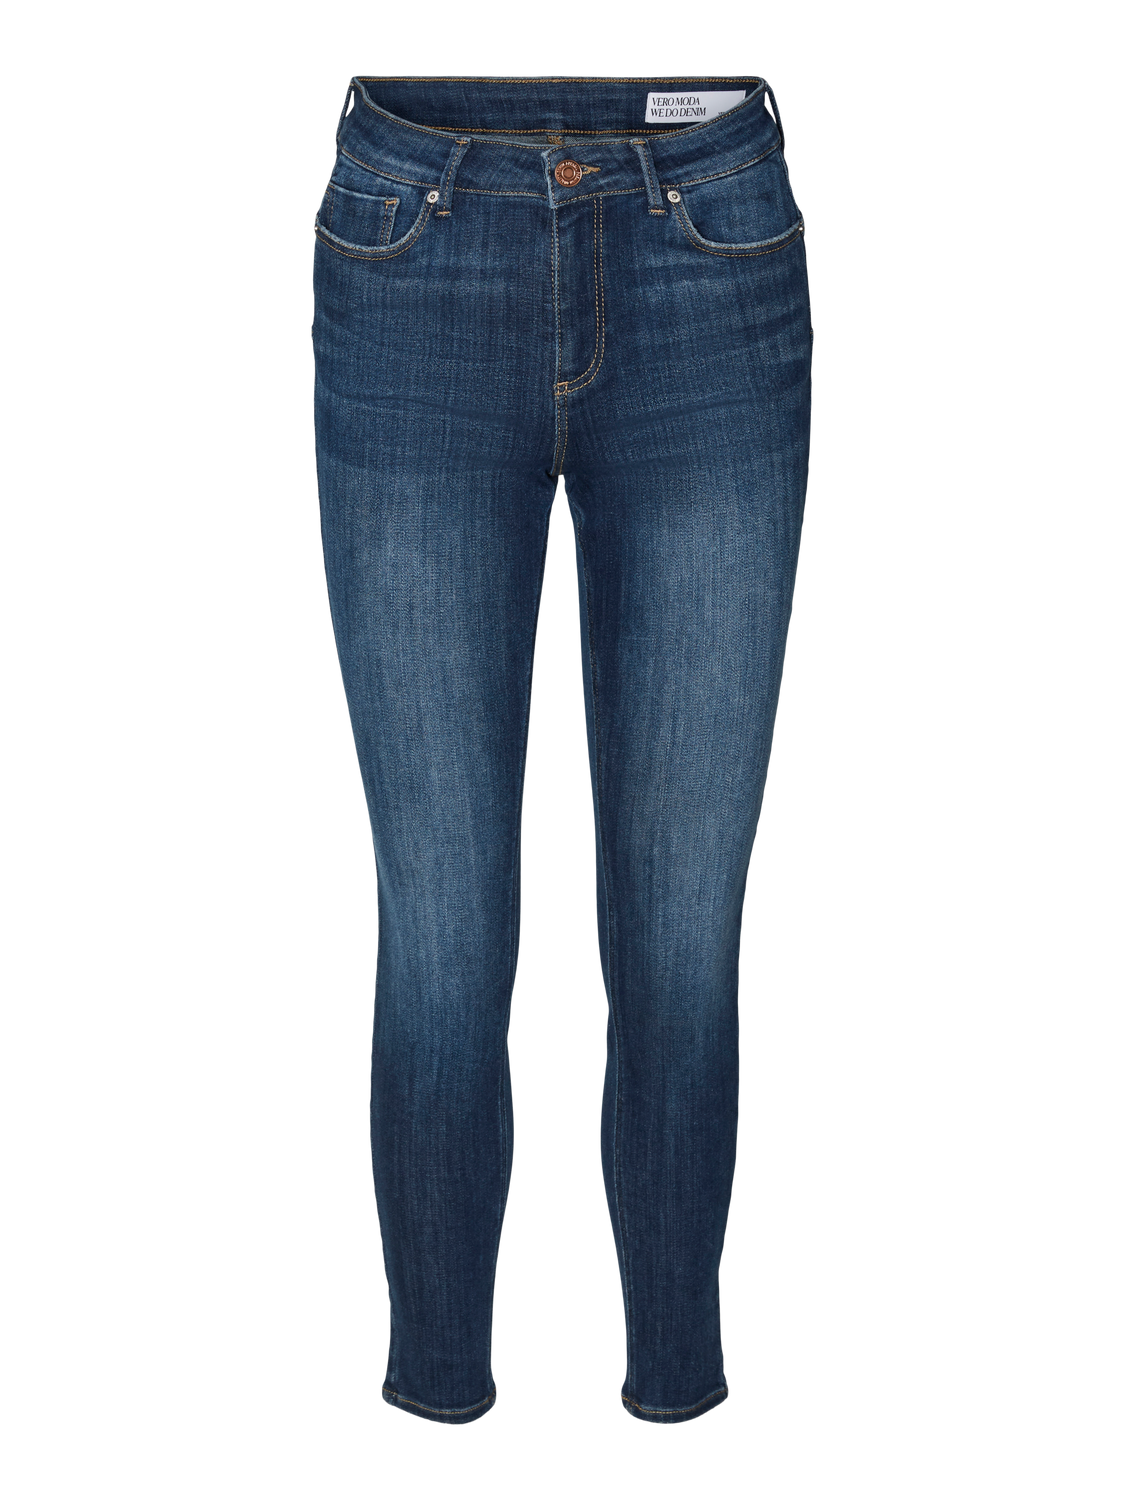 Vero Moda VMTANYA Krój skinny Jeans -Dark Blue Denim - 10311369